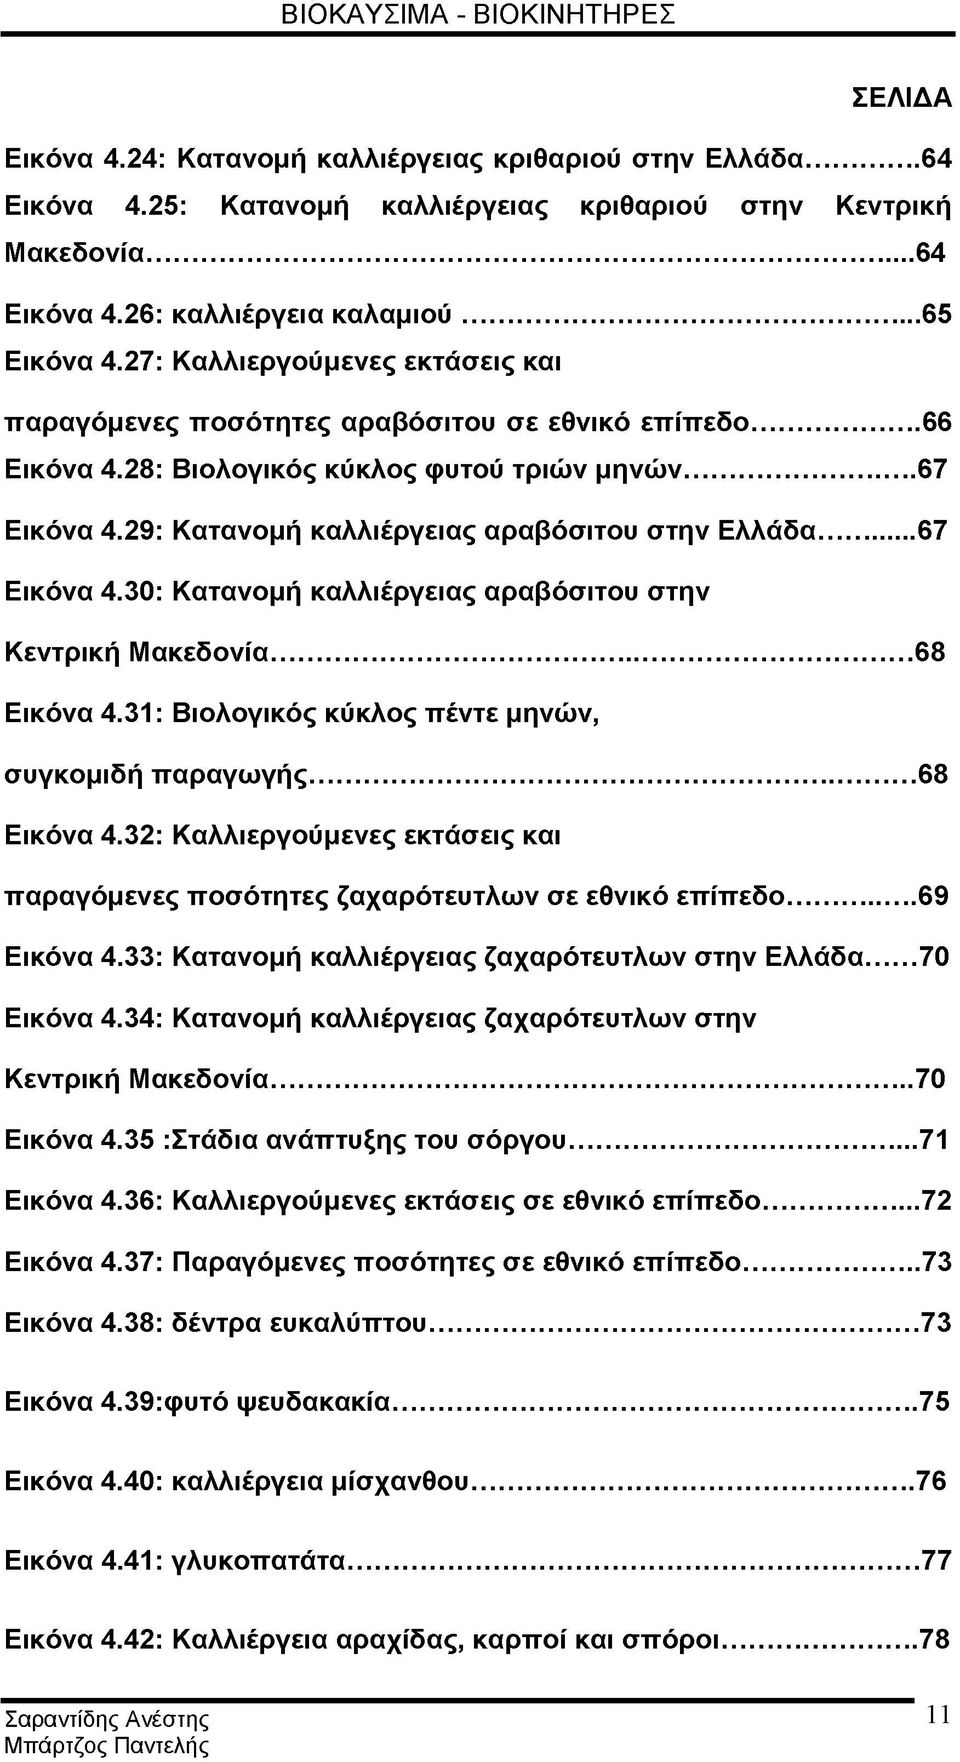 29: Κατανομή καλλιέργειας αραβόσιτου στην Ελλάδα...67 Εικόνα 4.30: Κατανομή καλλιέργειας αραβόσιτου στην Κεντρική Μακεδονία...68 Εικόνα 4.31: Βιολογικός κύκλος πέντε μηνών, συγκομιδή παραγωγής.